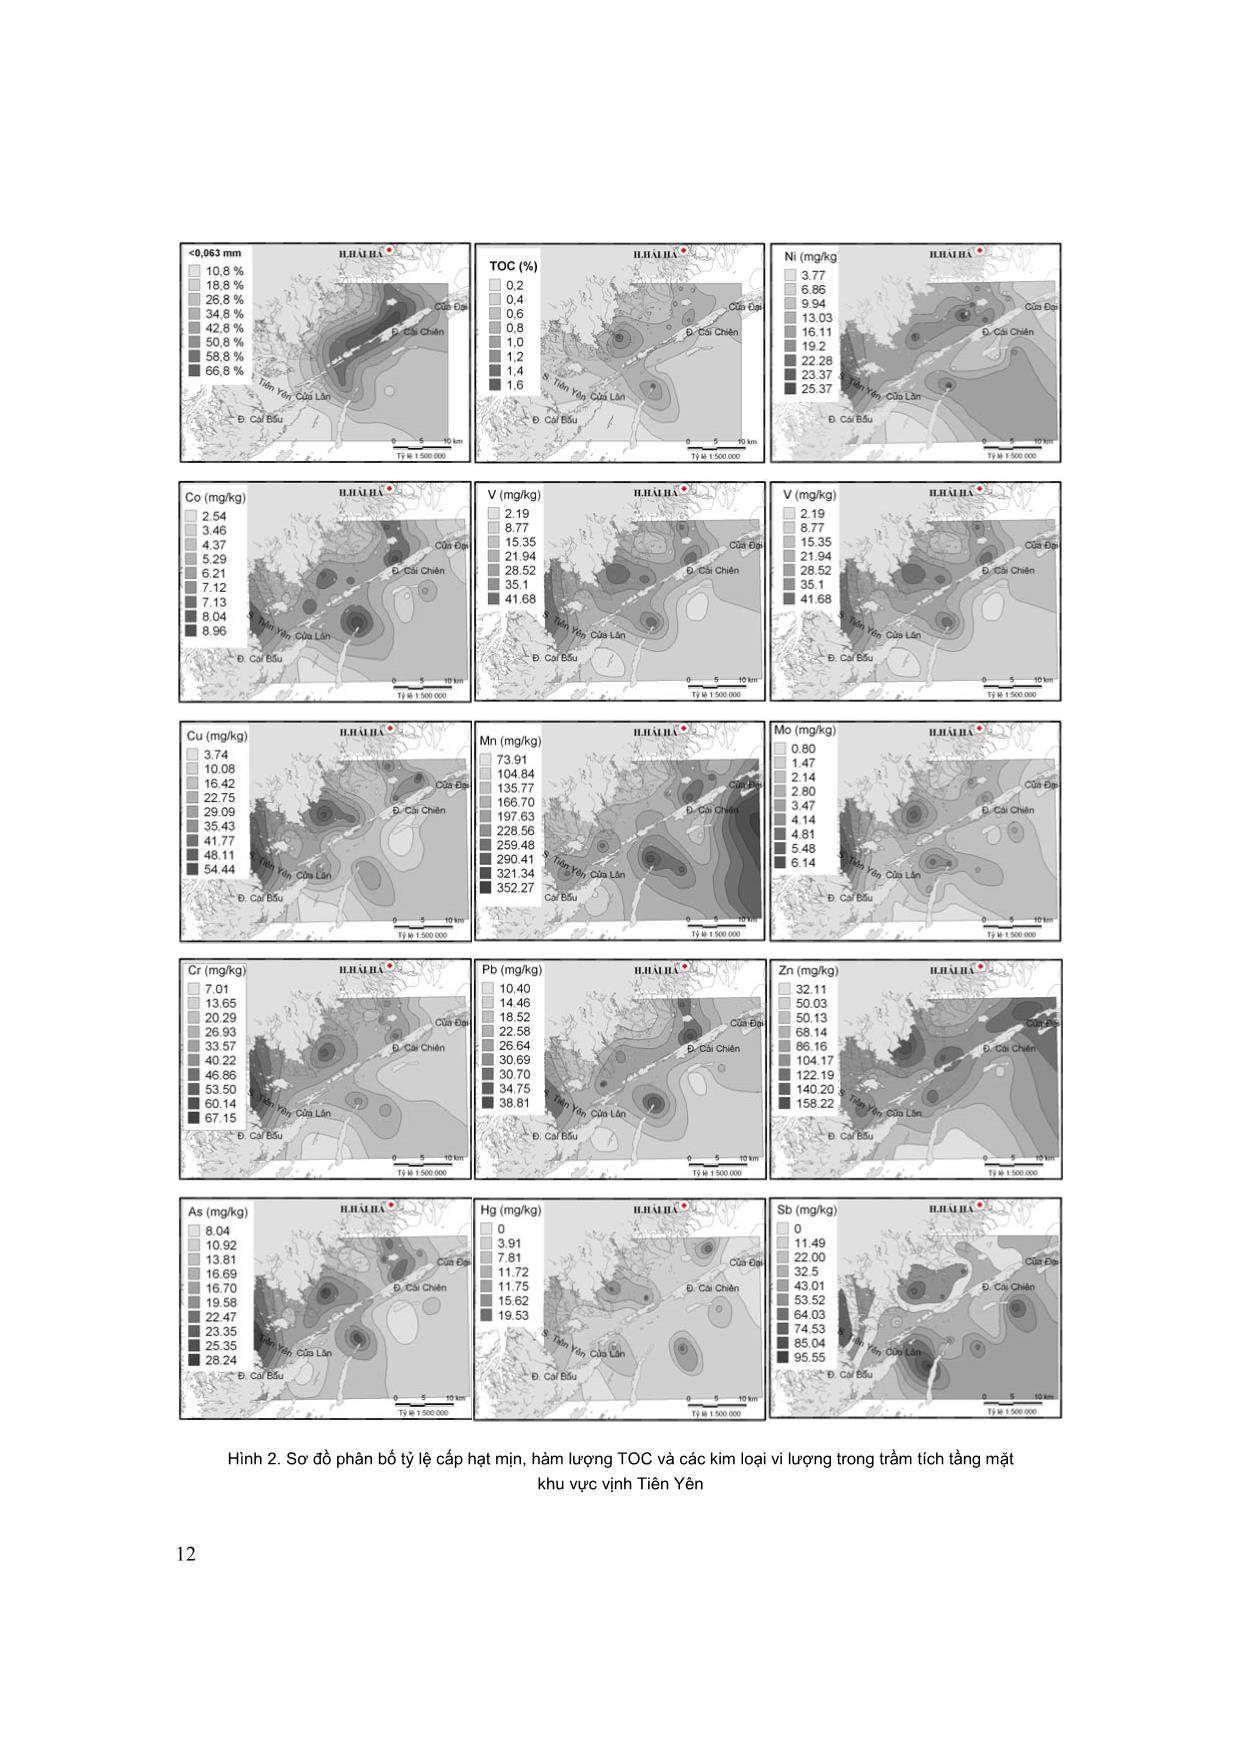 Đặc điểm phân bố các nguyên tố vi lượng trong trầm tích tầng mặt vịnh Tiên Yên trang 3